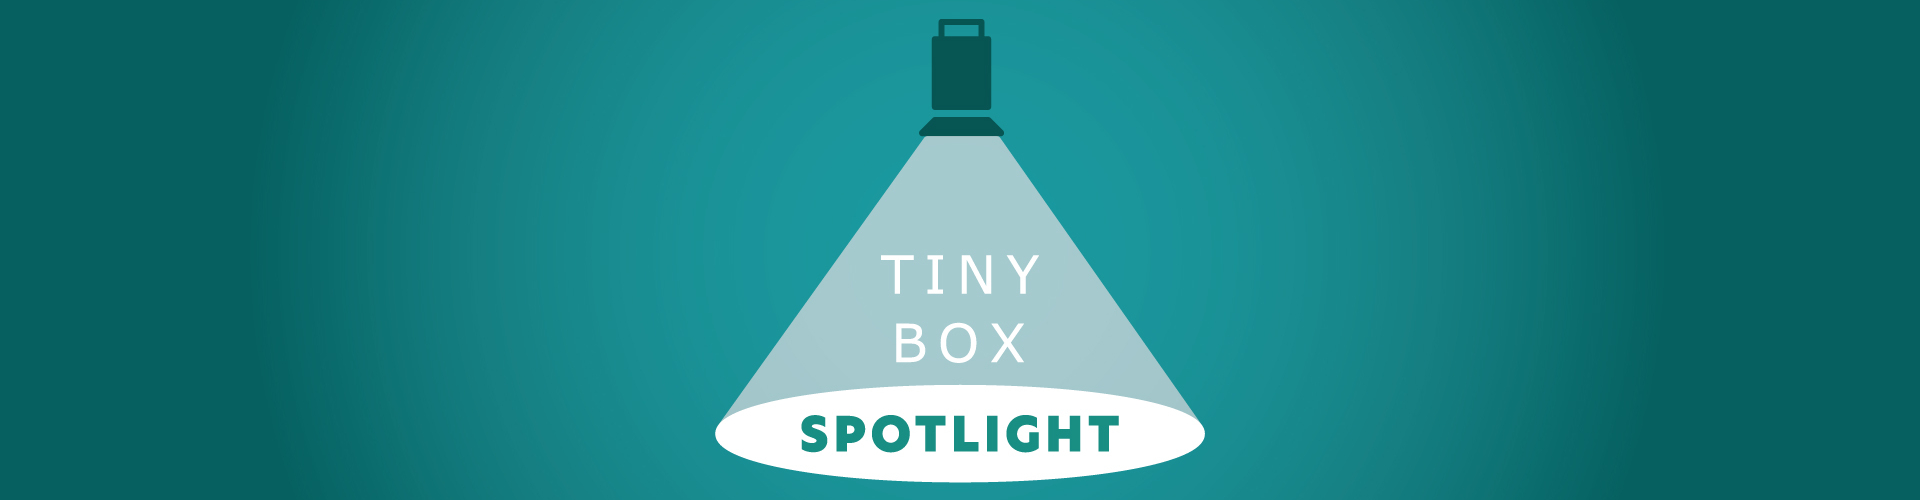 Tiny Box Spotlight top